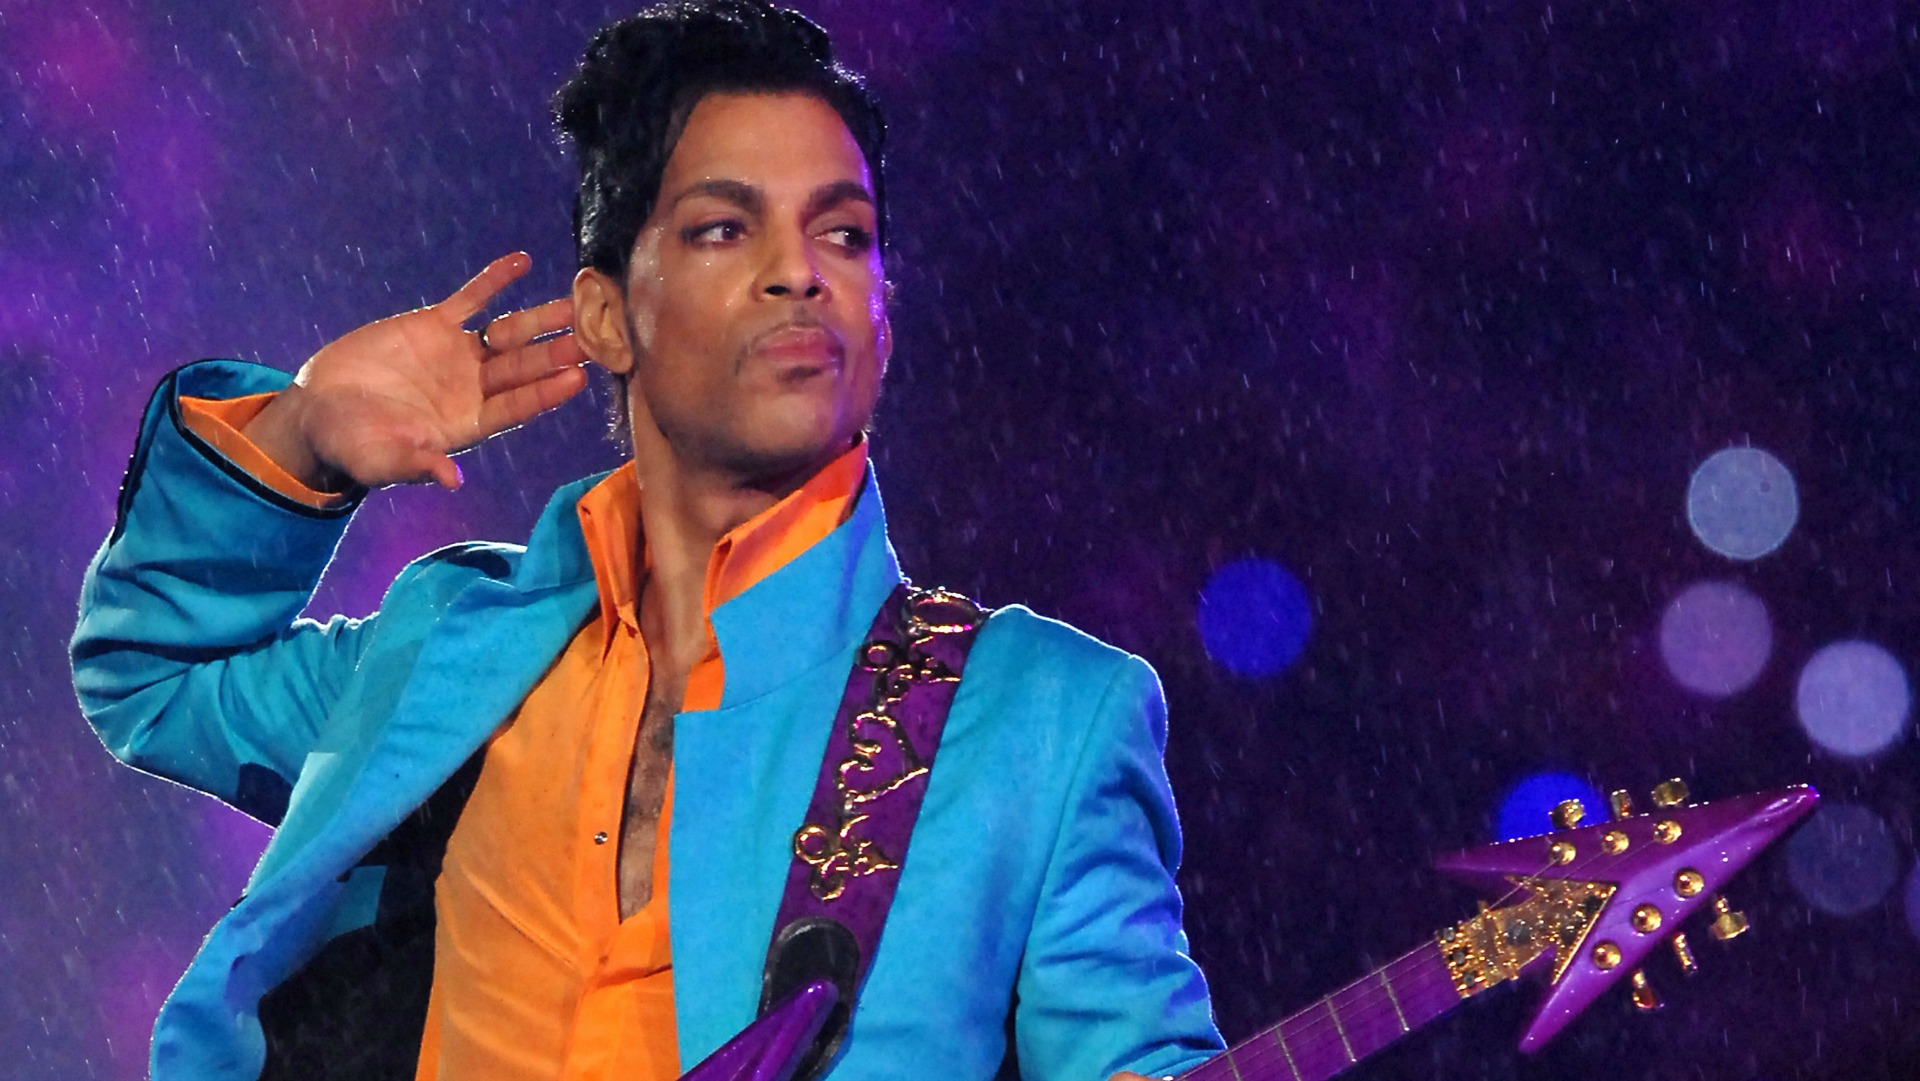 Una nueva antología de Prince que incluye 23 discos, ha llegado a plataformas digitales